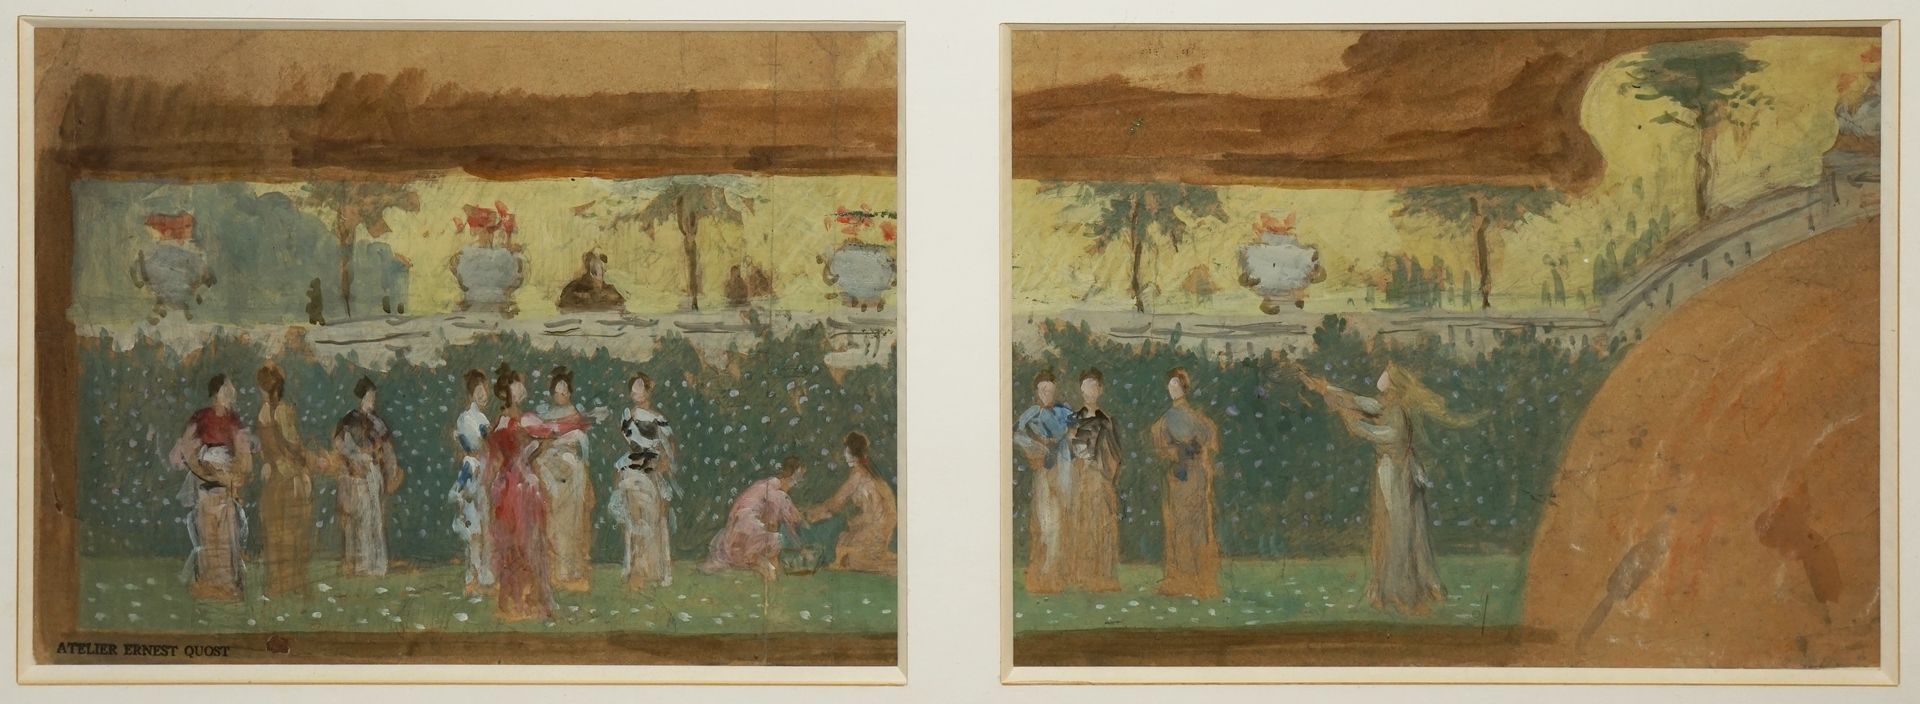 Null 欧内斯特，1844-1931
公园里优雅的女人
两张纸上的水粉画项目，装在同一个支架上
左下角有工作室印章
每张23 x 31厘米